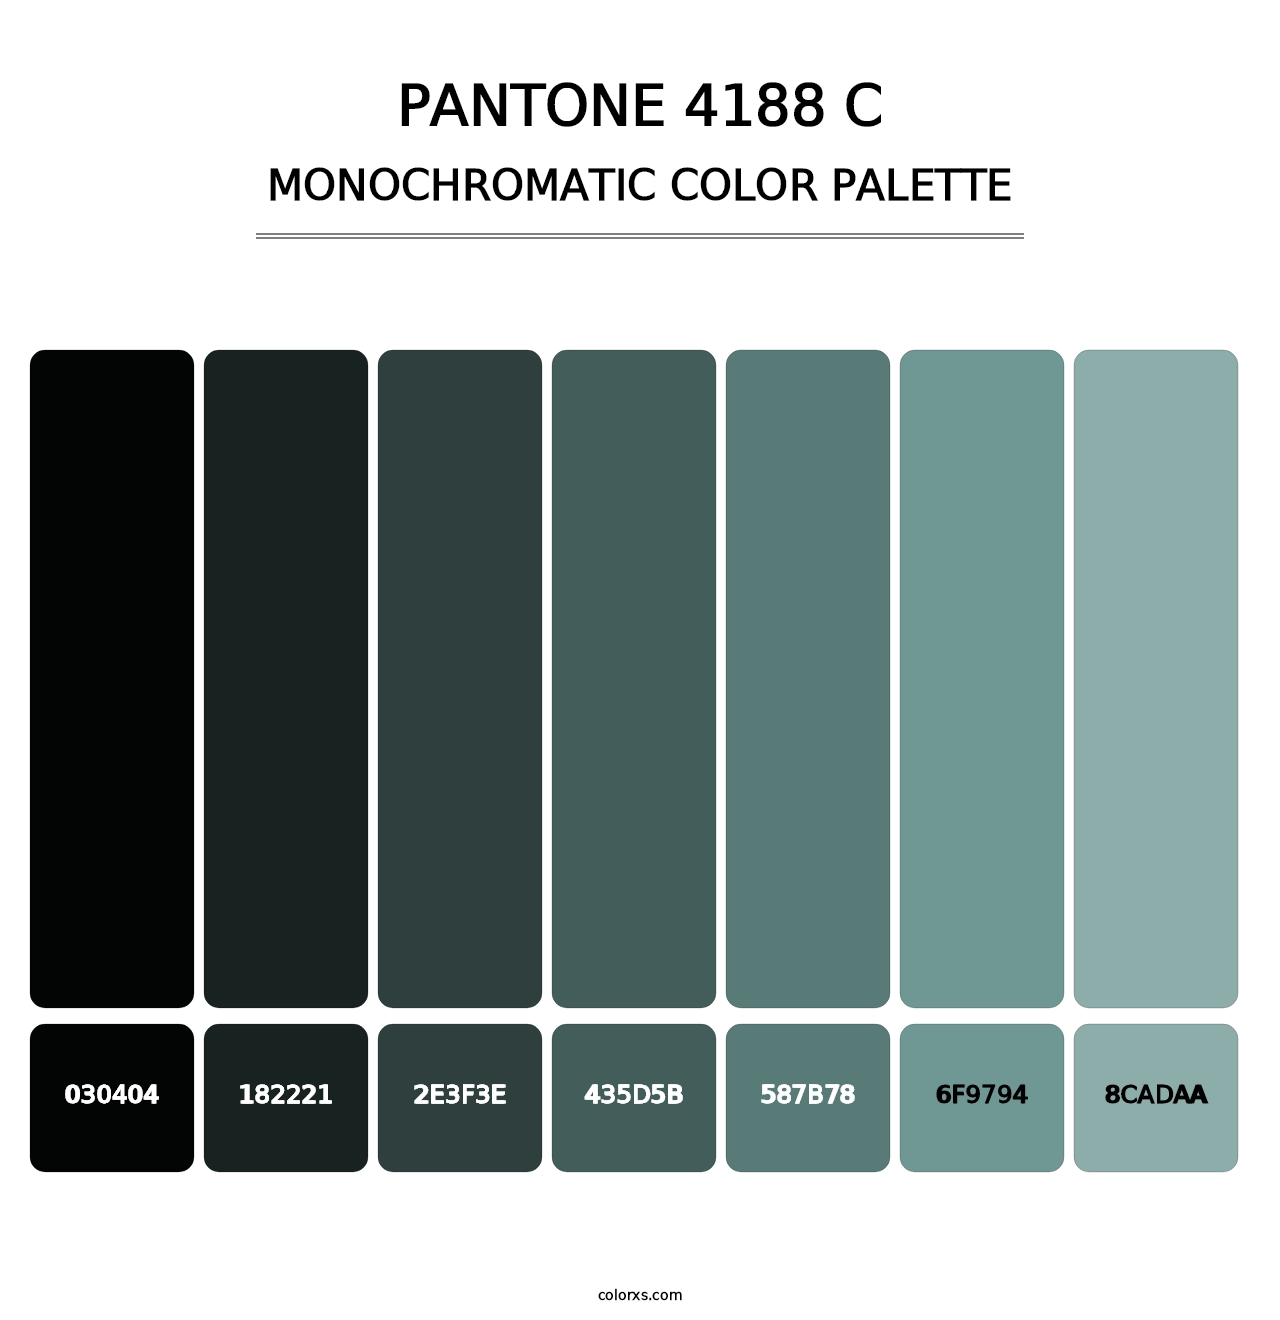 PANTONE 4188 C - Monochromatic Color Palette